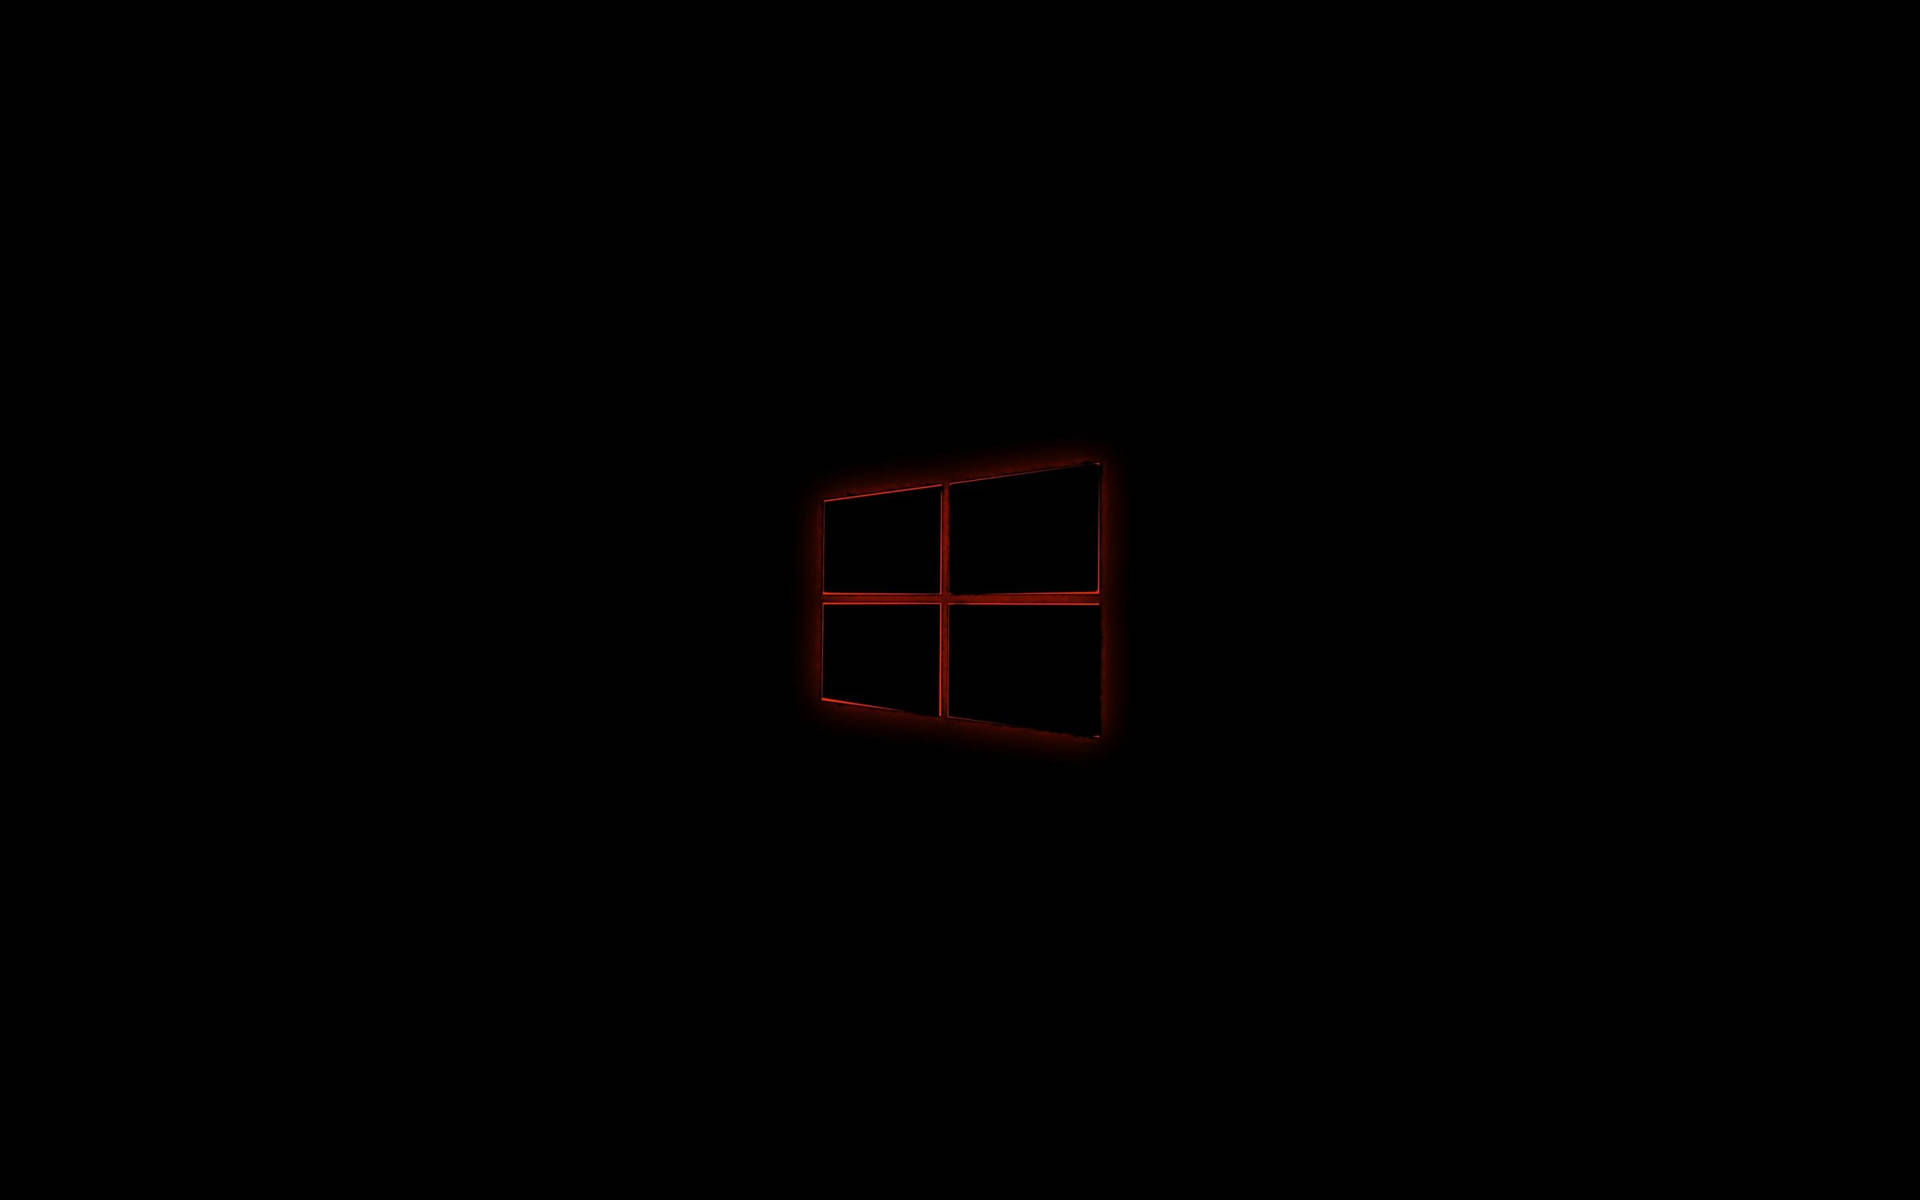 Nero Windows 10 Hd Luce Rossa Sfondo